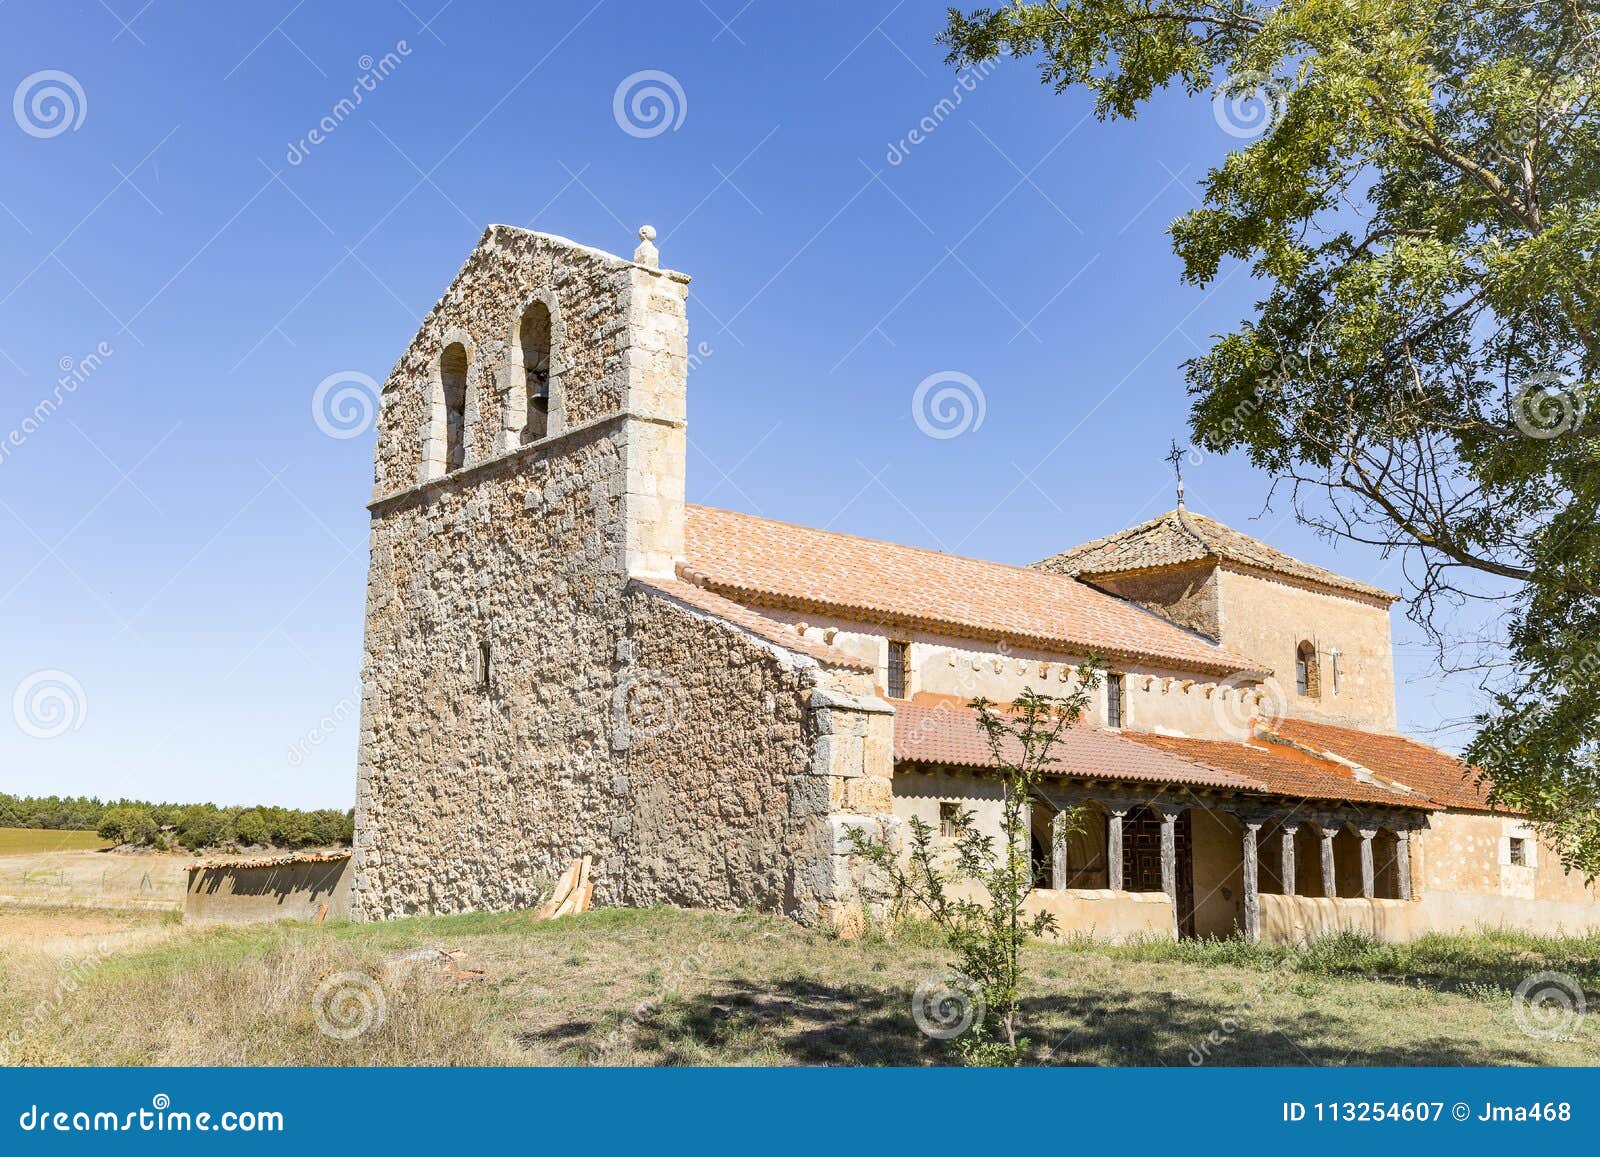 santiago apostol church in zayas de bascones village, alcubilla de avellaneda